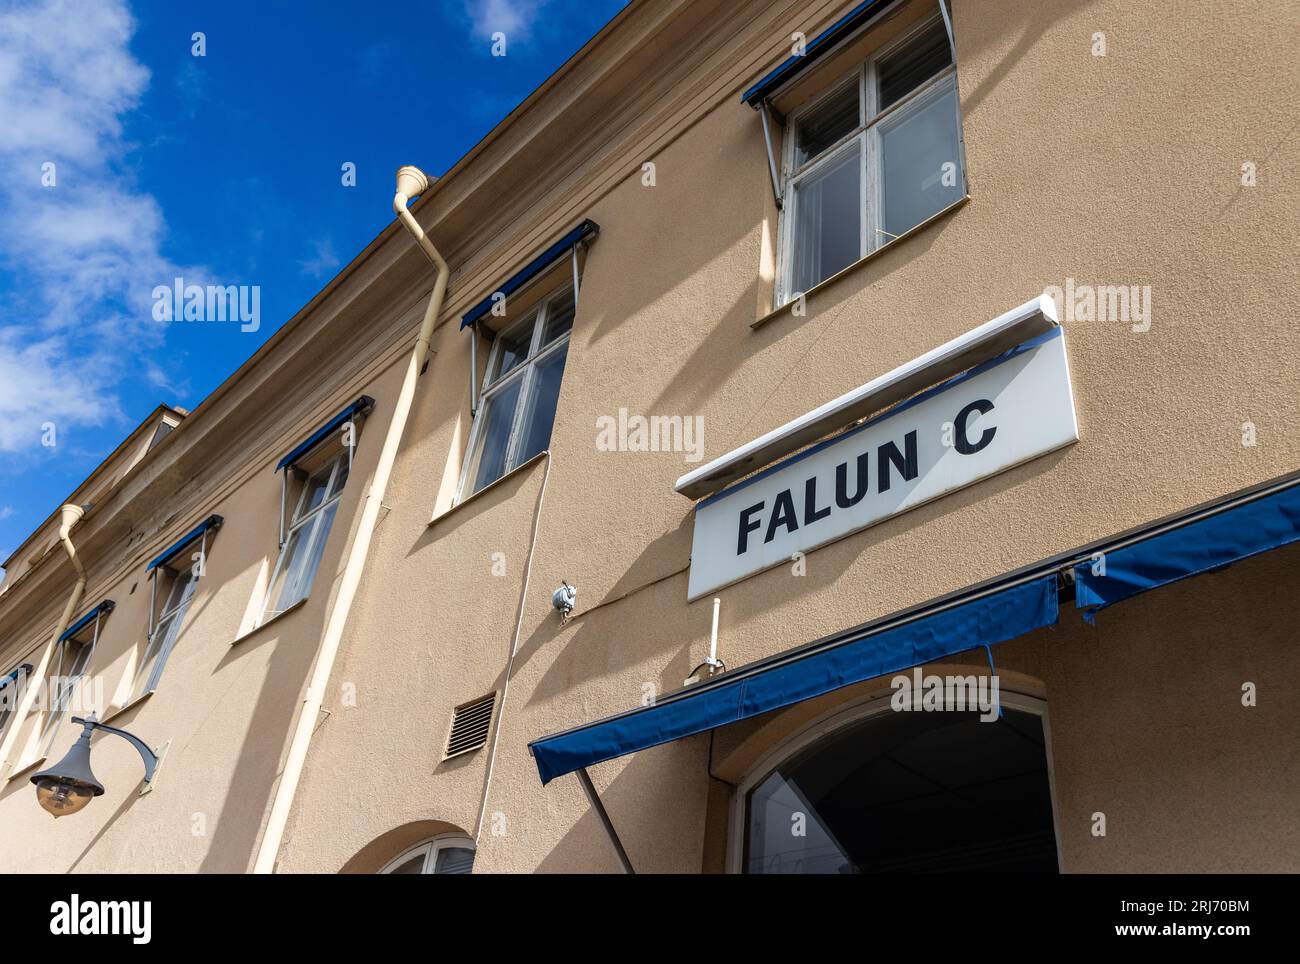 Falun central station, Falun, Sweden. Stock Photo